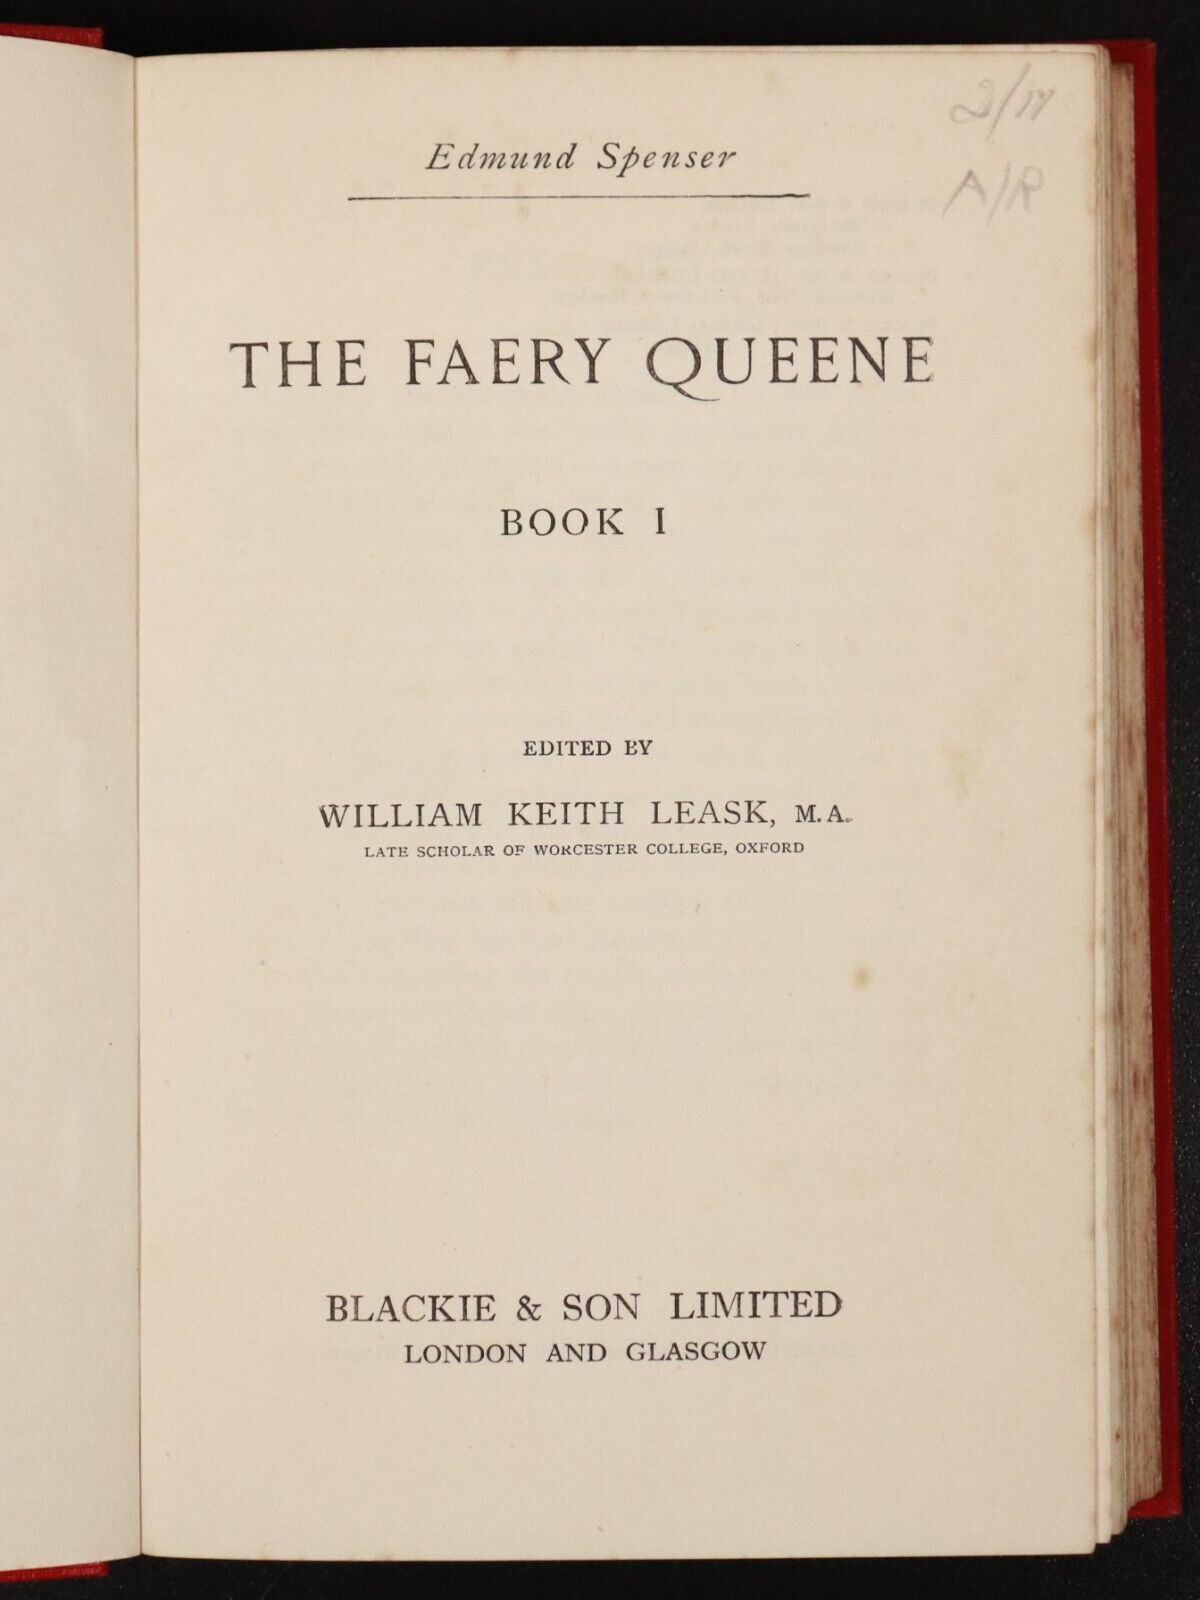 c1920 The Faery Queene by Edmund Spenser Antique British Poetry Book - 0